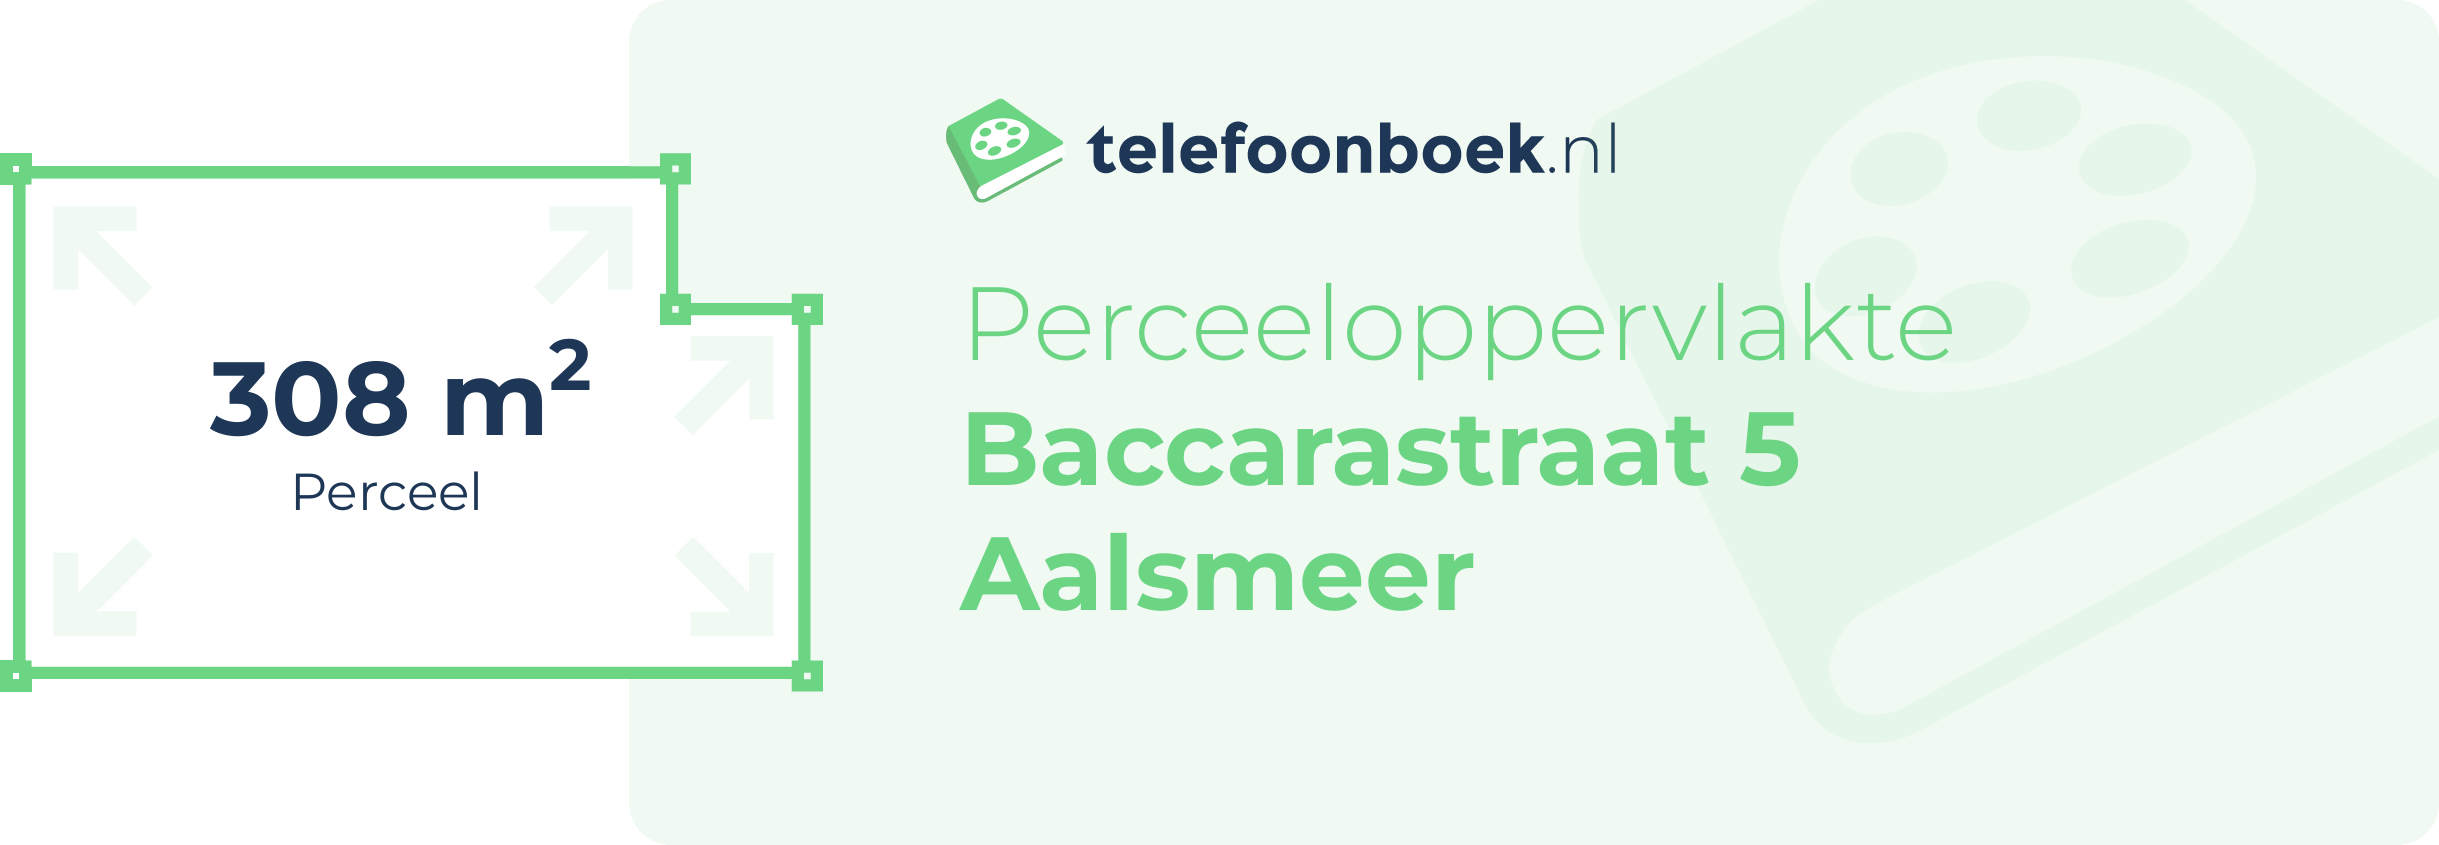 Perceeloppervlakte Baccarastraat 5 Aalsmeer